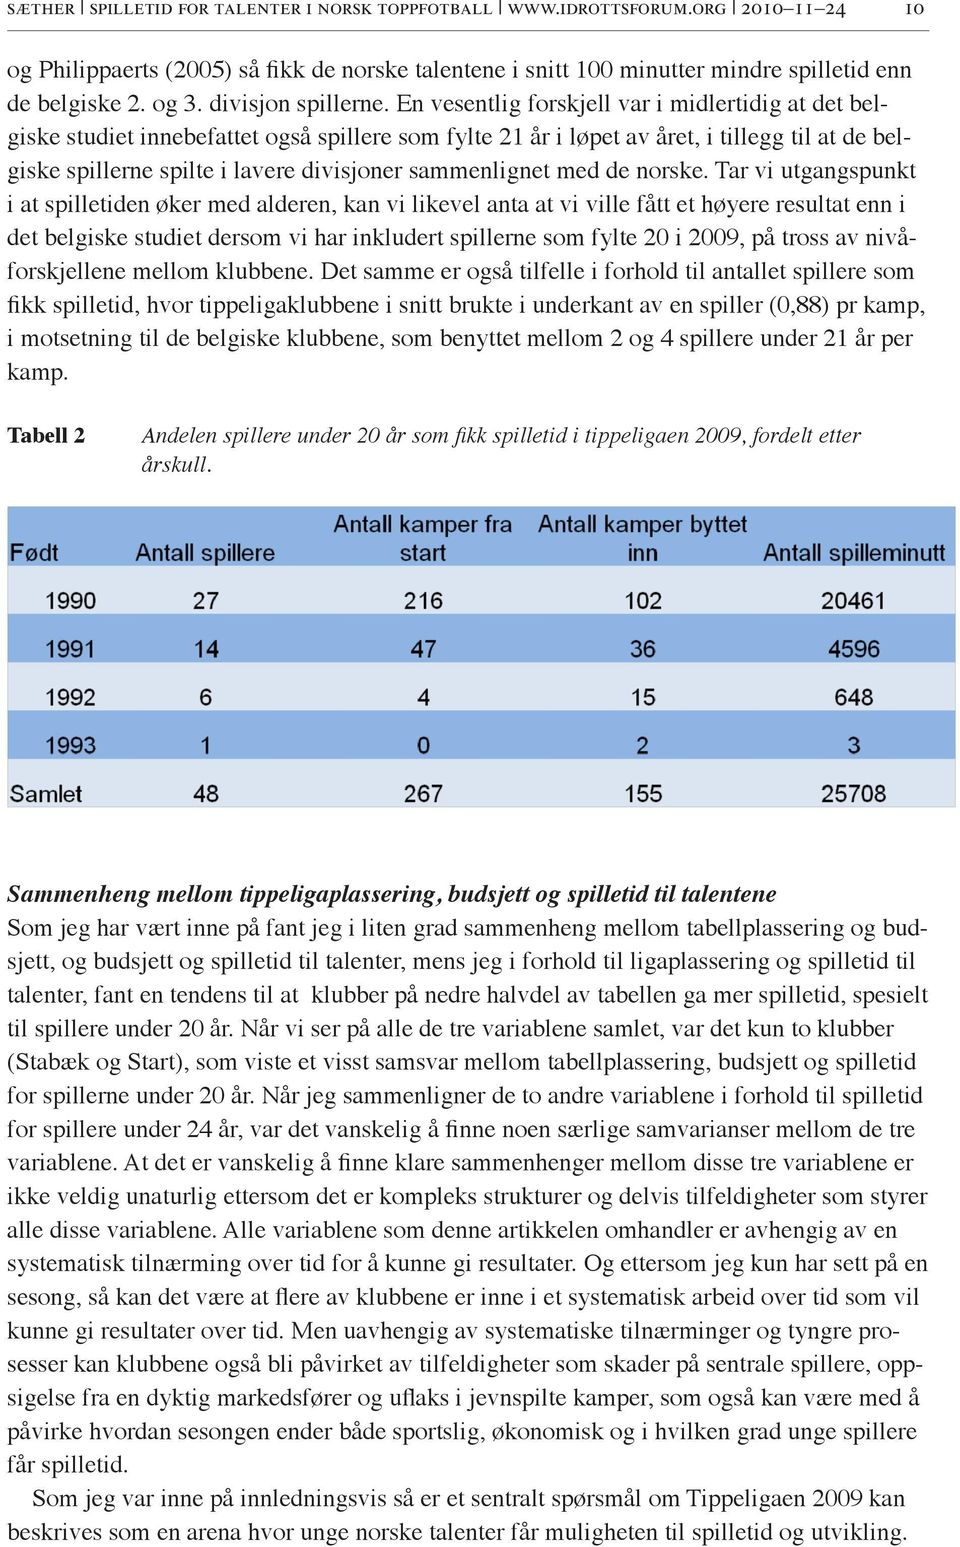 En vesentlig forskjell var i midlertidig at det belgiske studiet innebefattet også spillere som fylte 21 år i løpet av året, i tillegg til at de belgiske spillerne spilte i lavere divisjoner